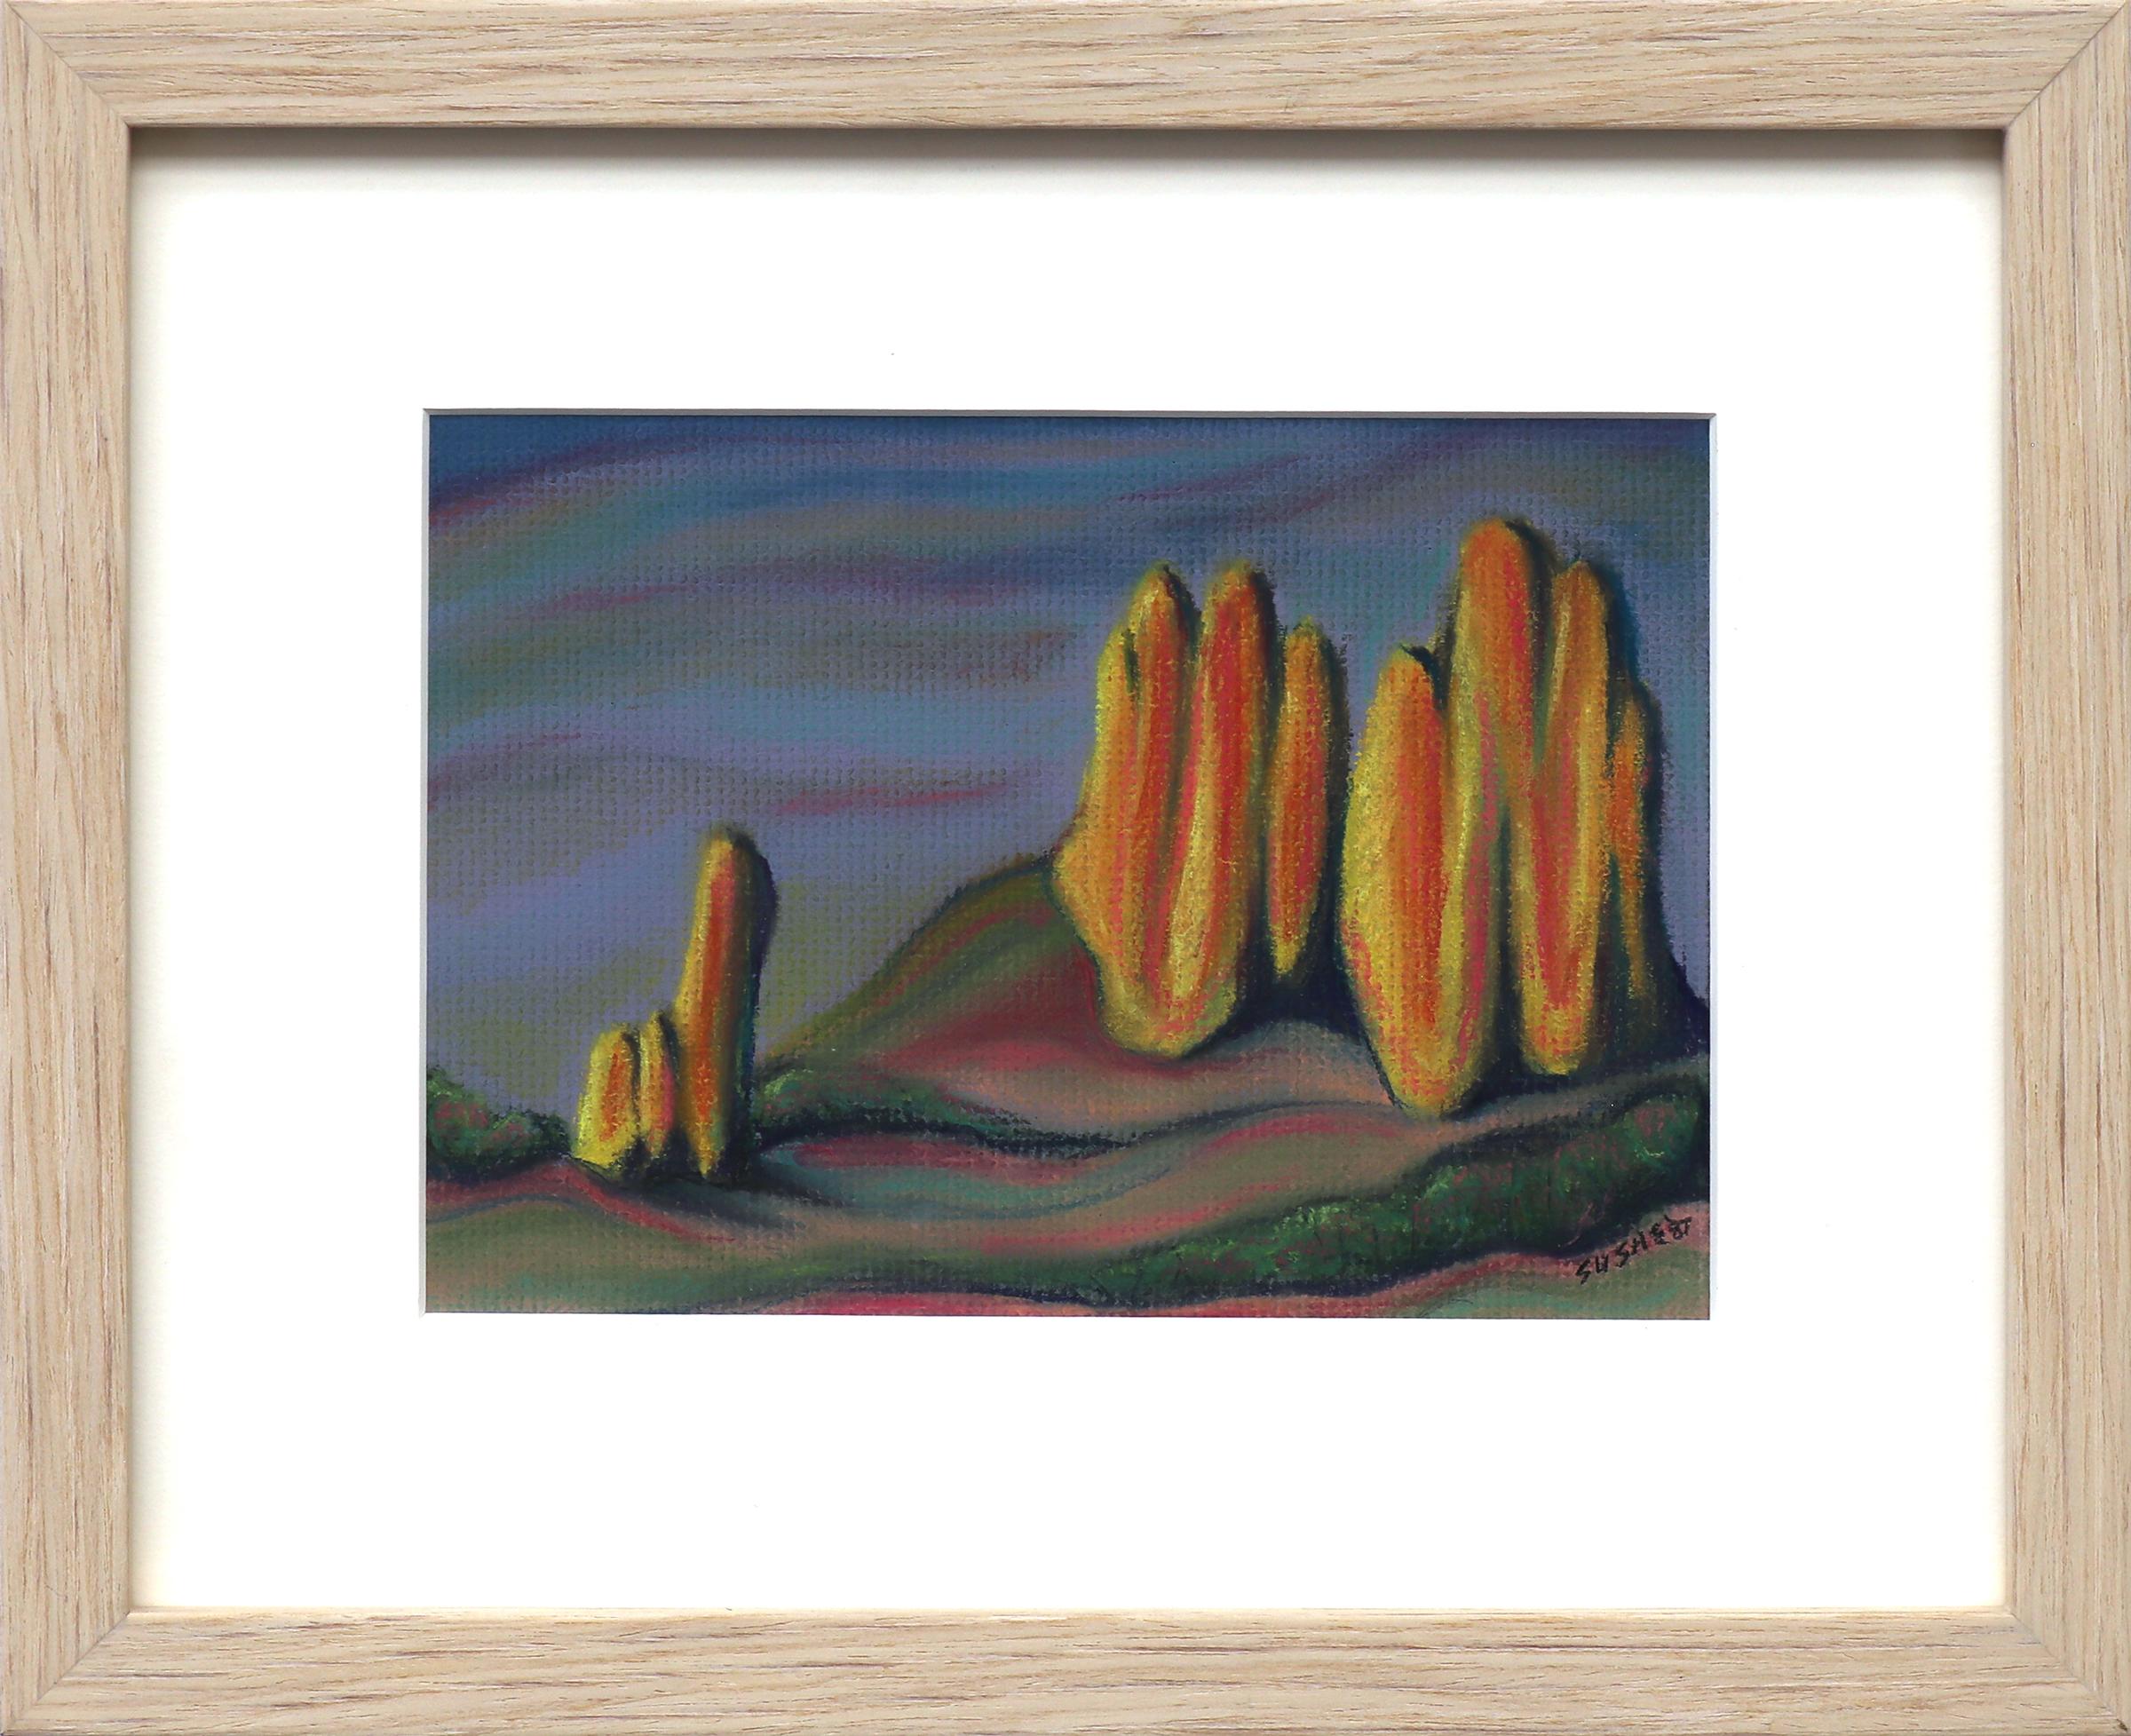 'Garden of the Gods' - Colorado Springs, Colorado Landscape, Pastel Drawing